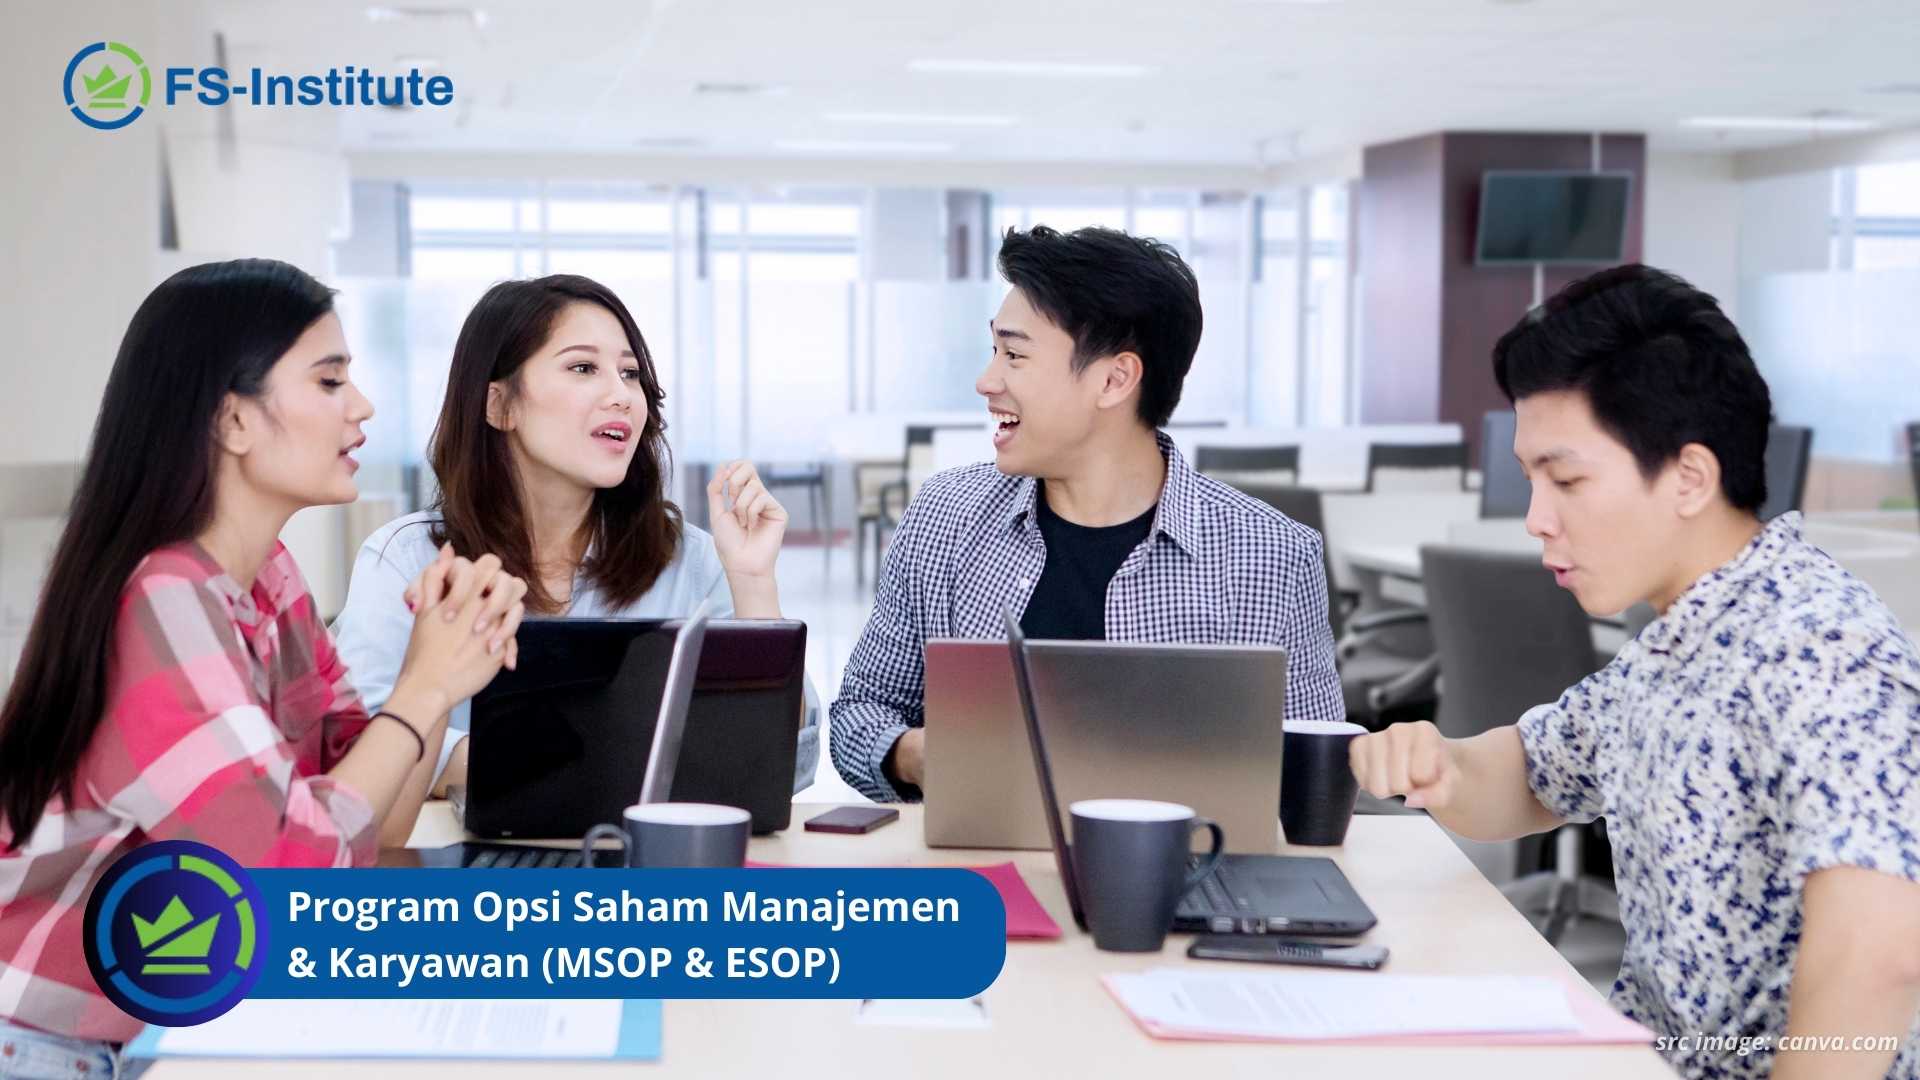 Bagaimana Program Opsi Saham Manajemen & Karyawan (MSOP & ESOP)?